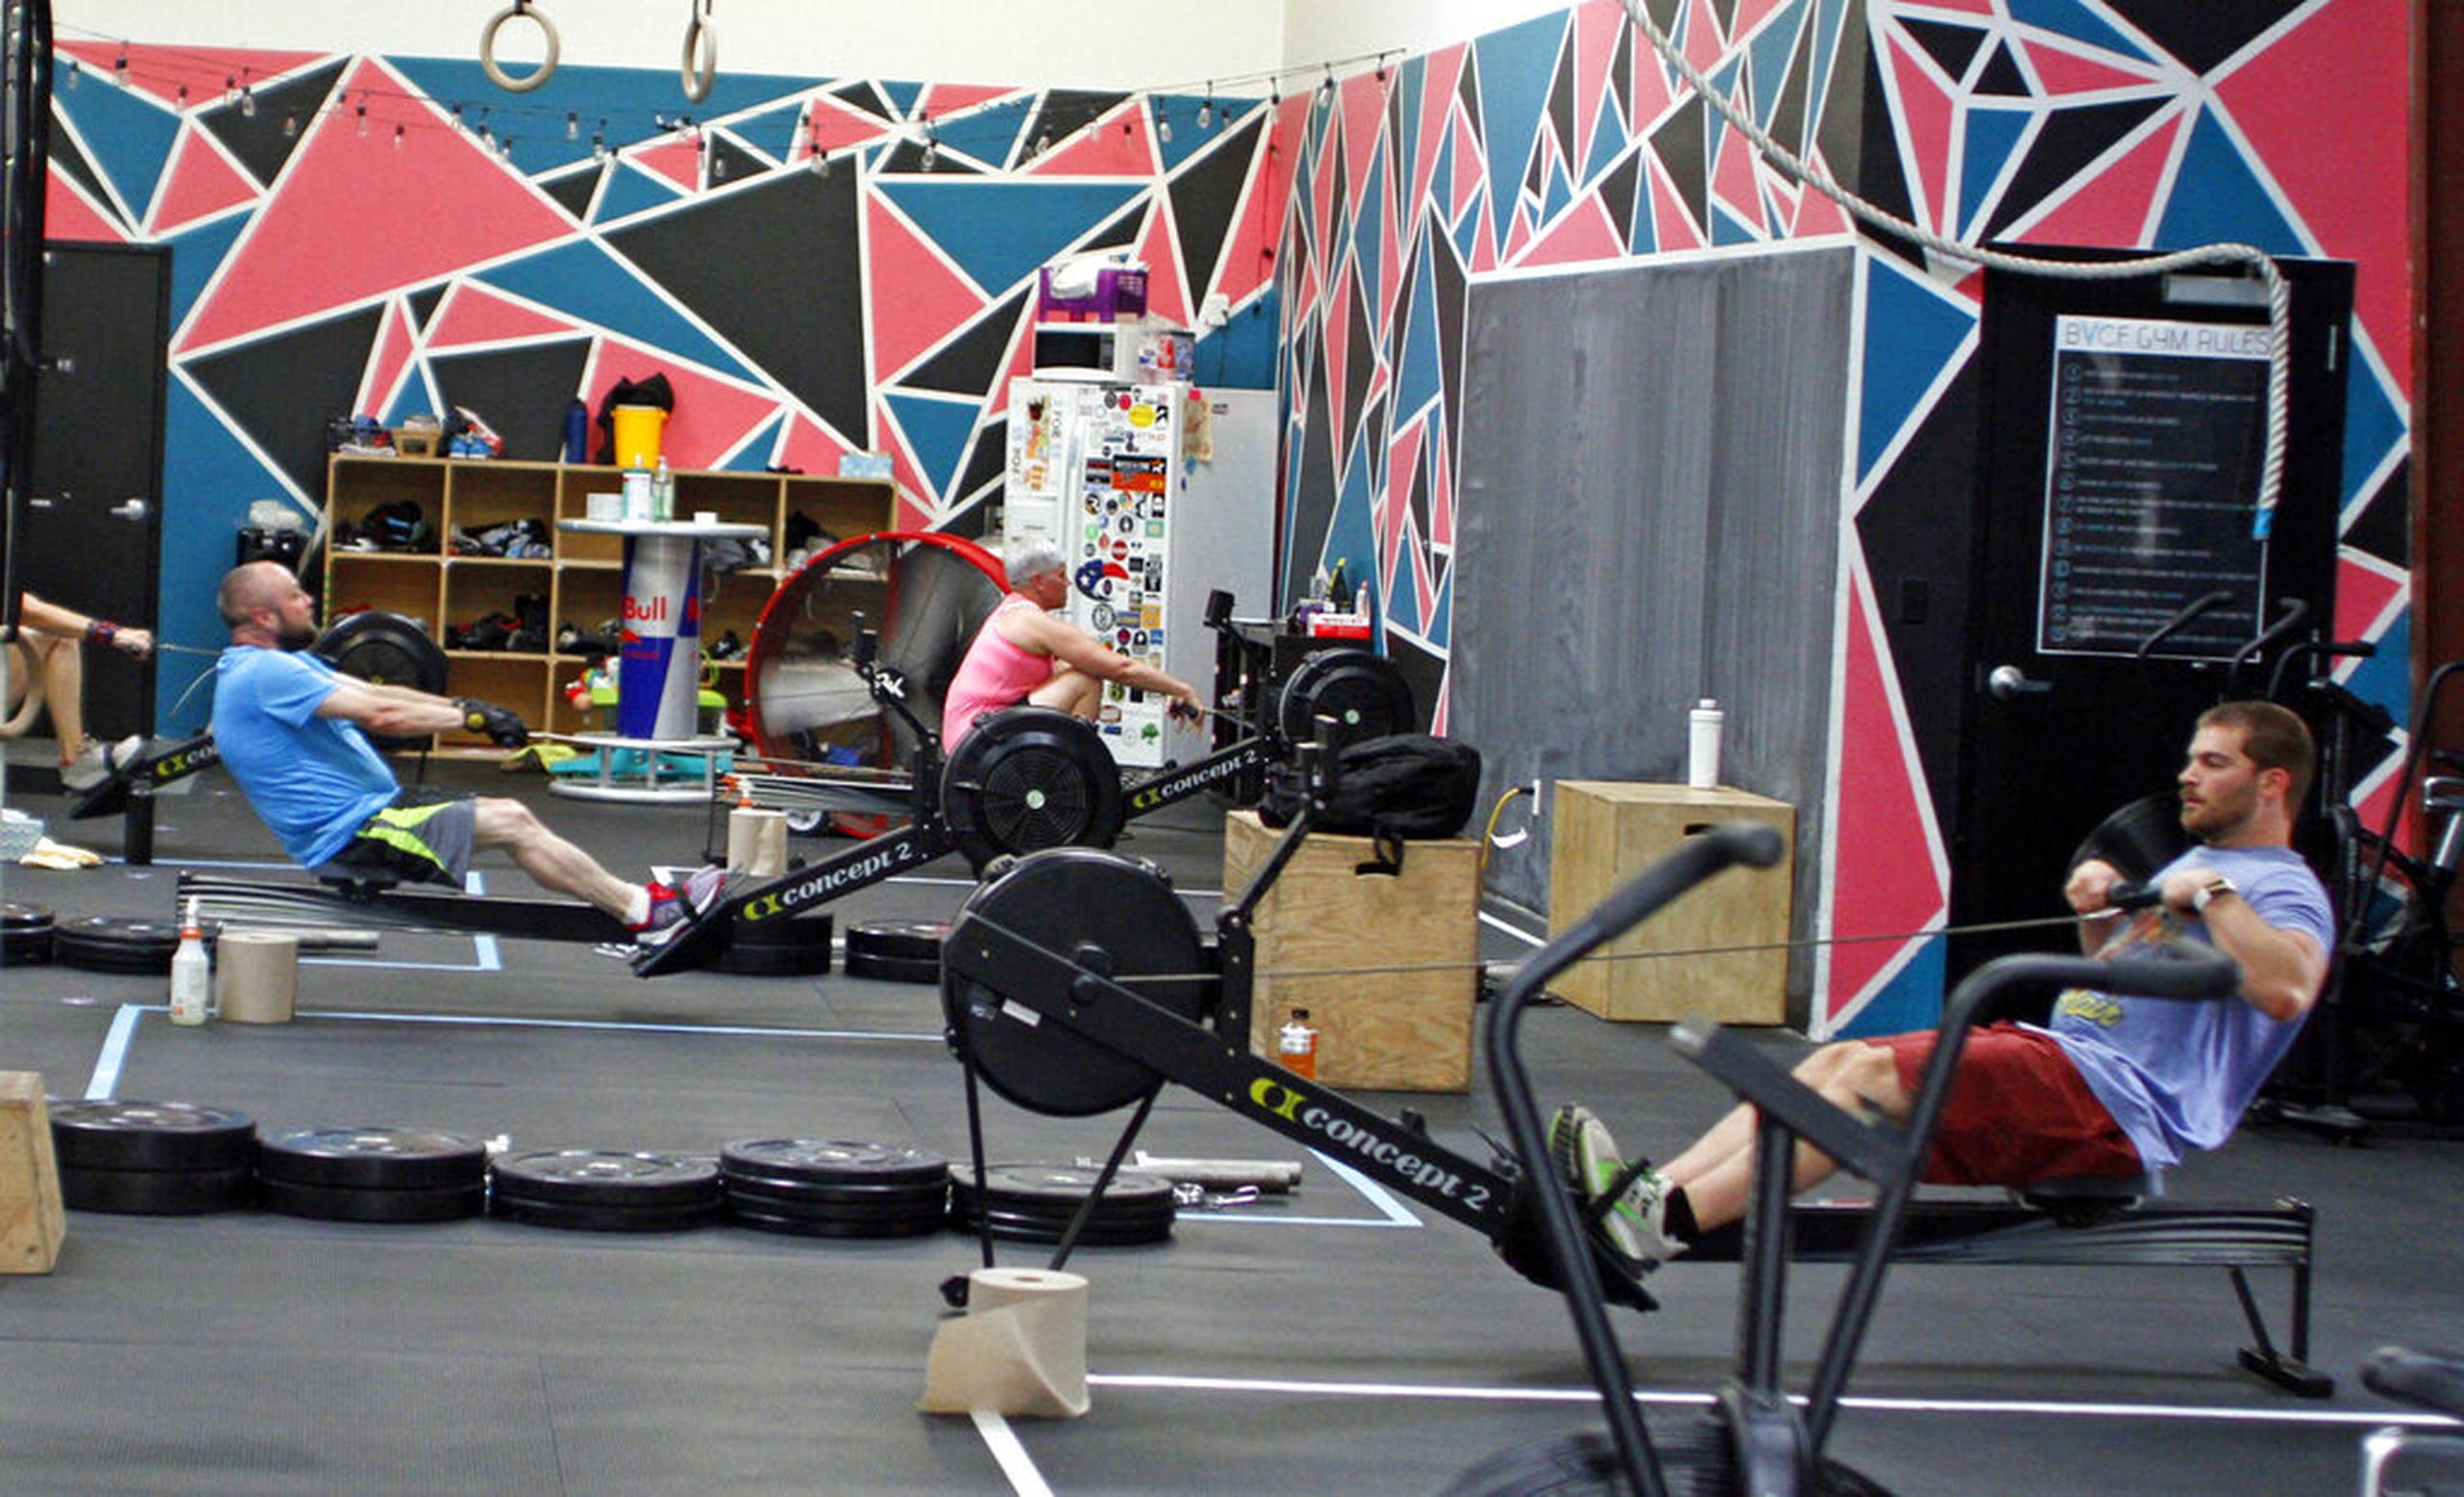 Según el sitio web de CrossFit, la tarifa anual de afiliación es de $3,000, lo que permite a los gimnasios usar el nombre, logotipo y materiales promocionales de CrossFit, entre otros beneficios.